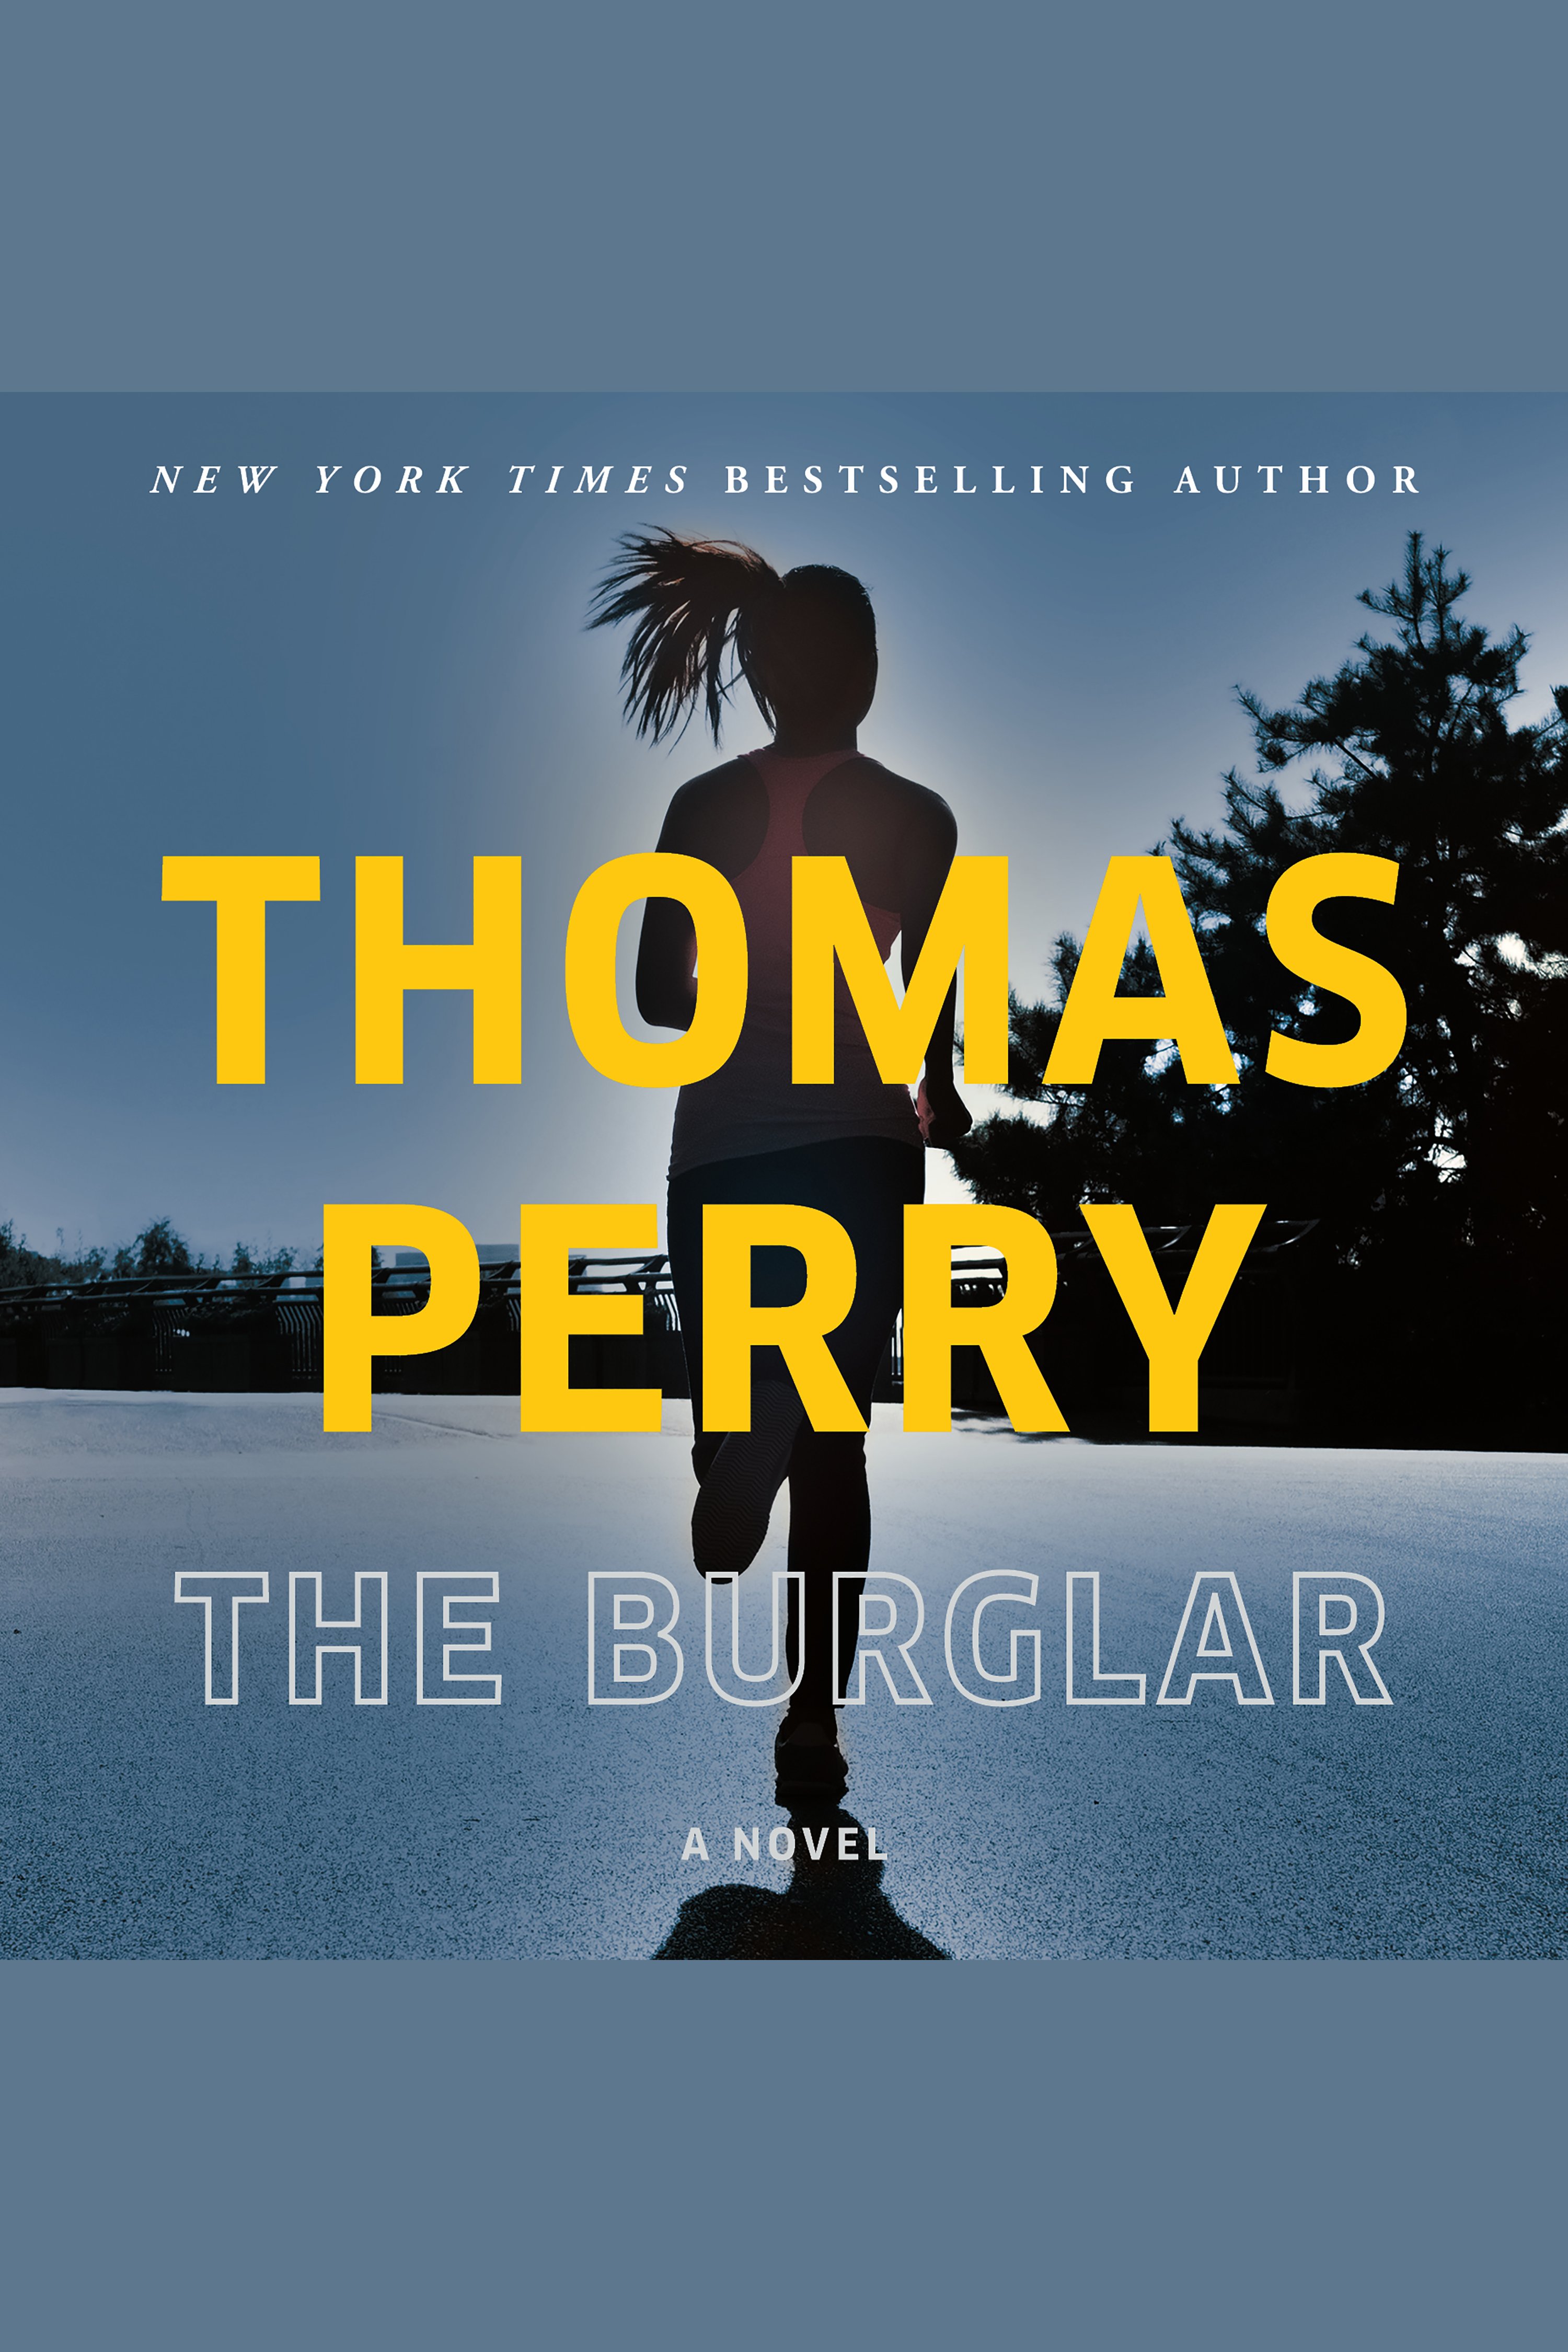 Image de couverture de Burglar, The [electronic resource] : A Novel